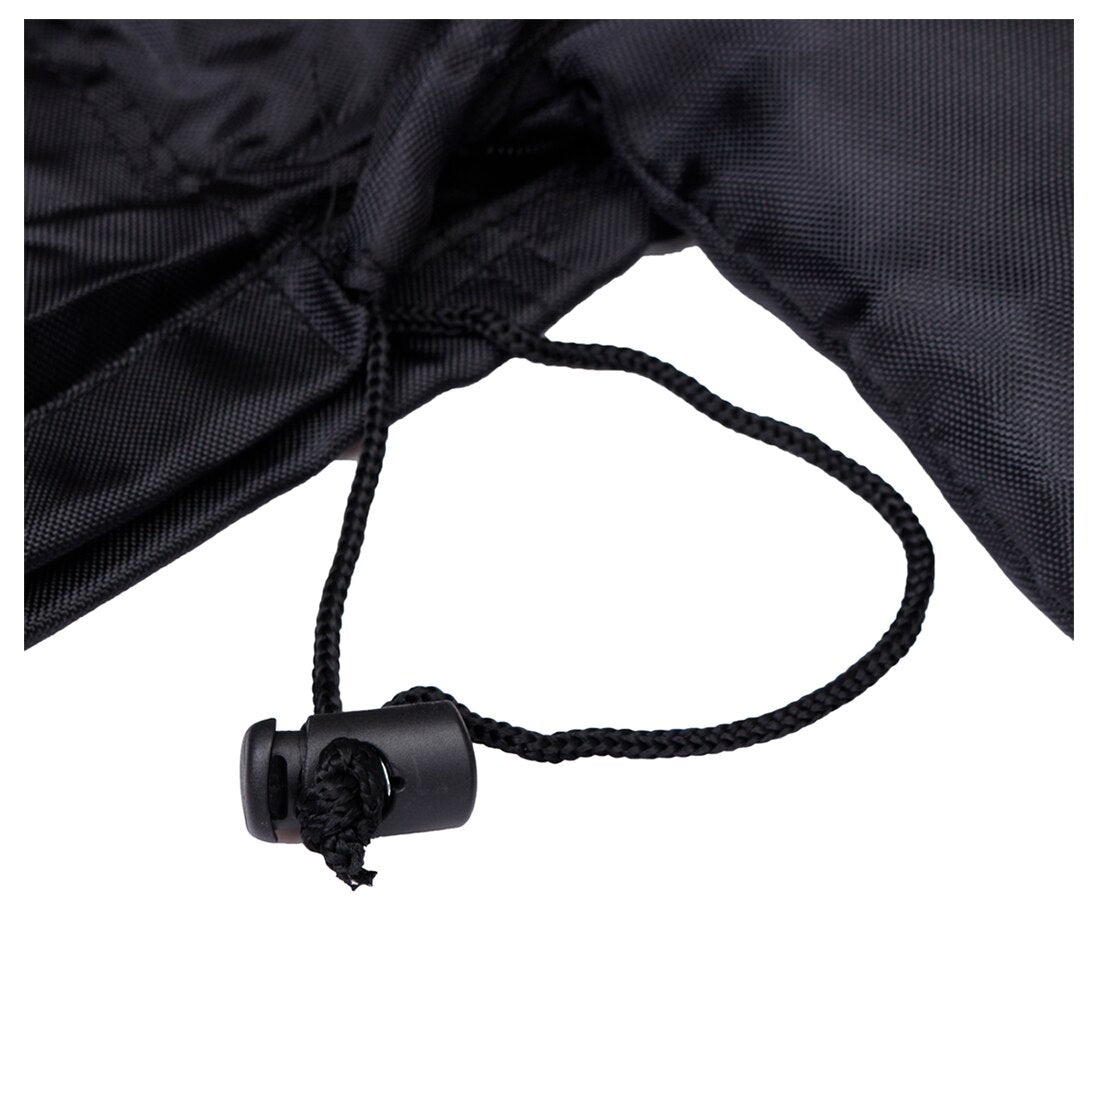 Gate Check Pram Portable Travel Bag Umbrella Stroller/Pushchair/Buggy Bag Cover Style:Umbrella Stroller Style - ebowsos